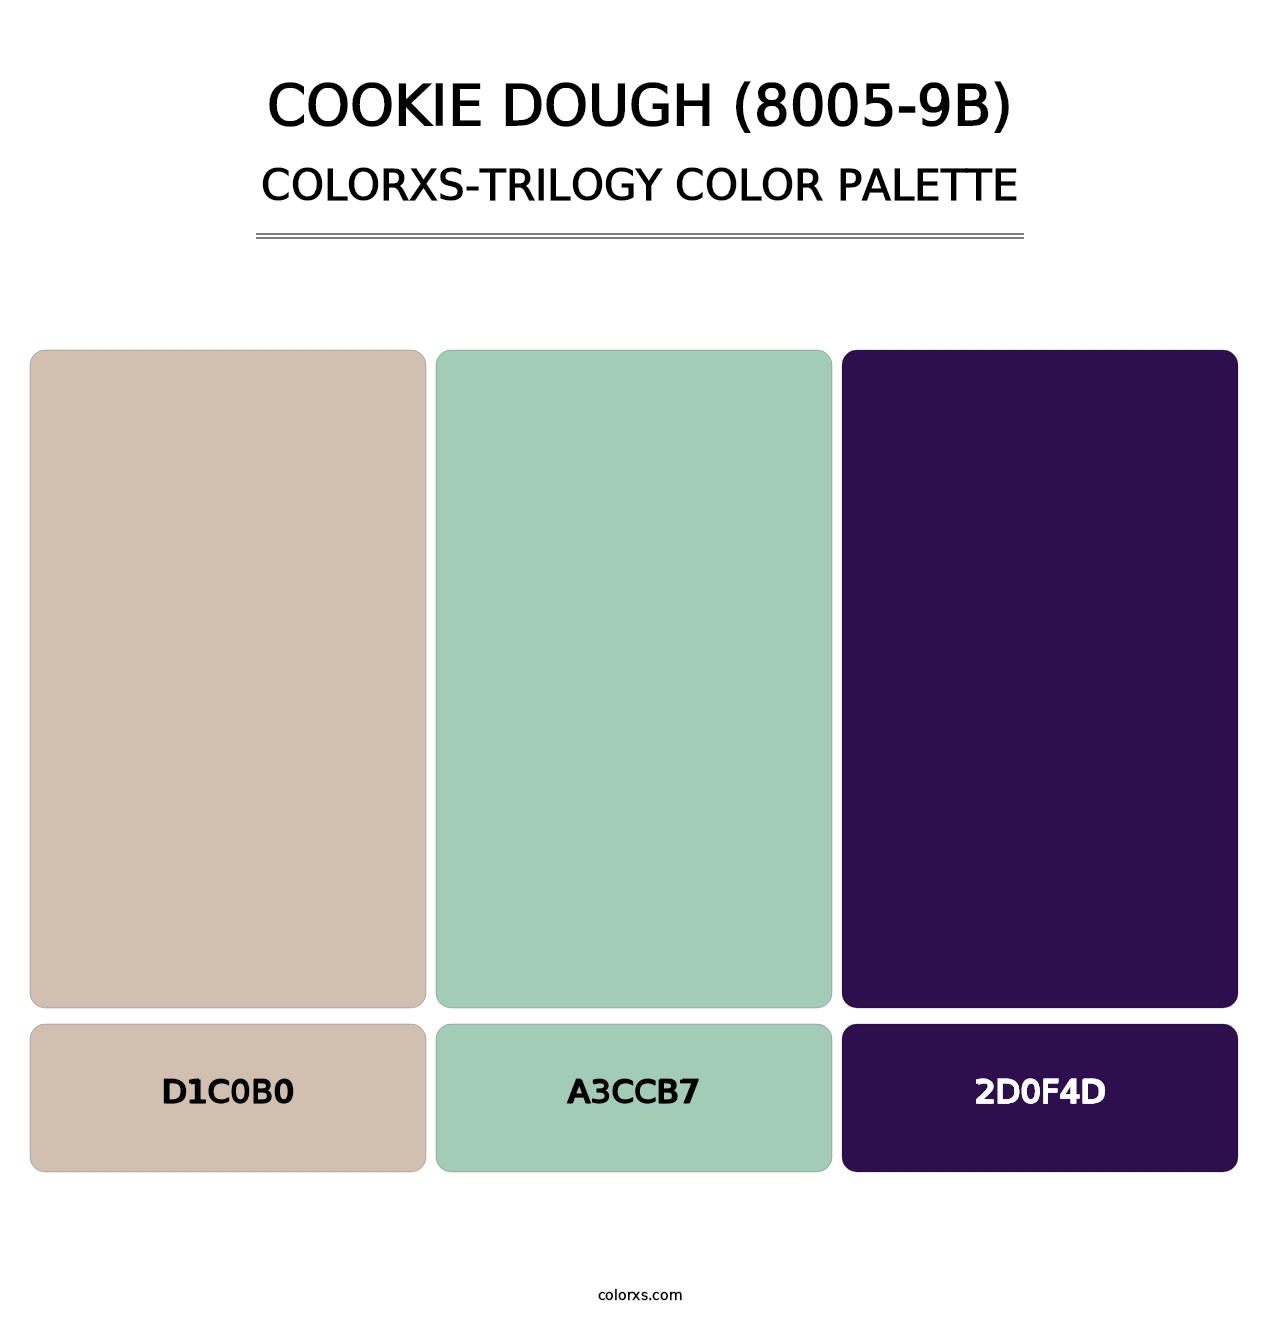 Cookie Dough (8005-9B) - Colorxs Trilogy Palette